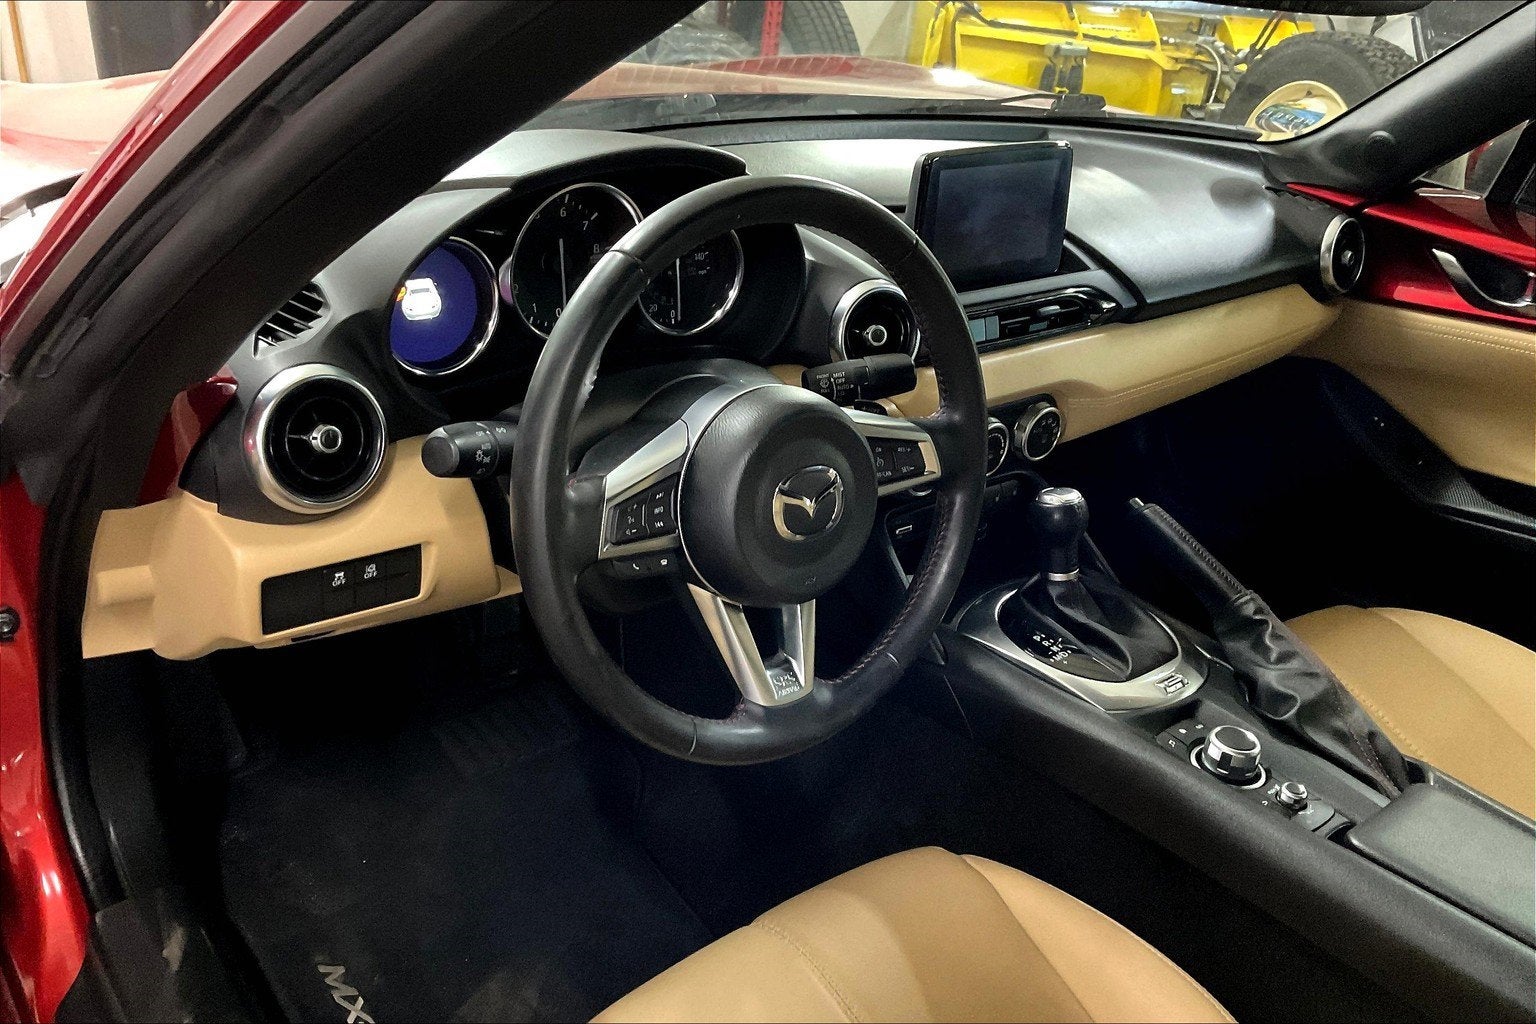 2019 Mazda Mazda MX-5 Miata RF Grand Touring